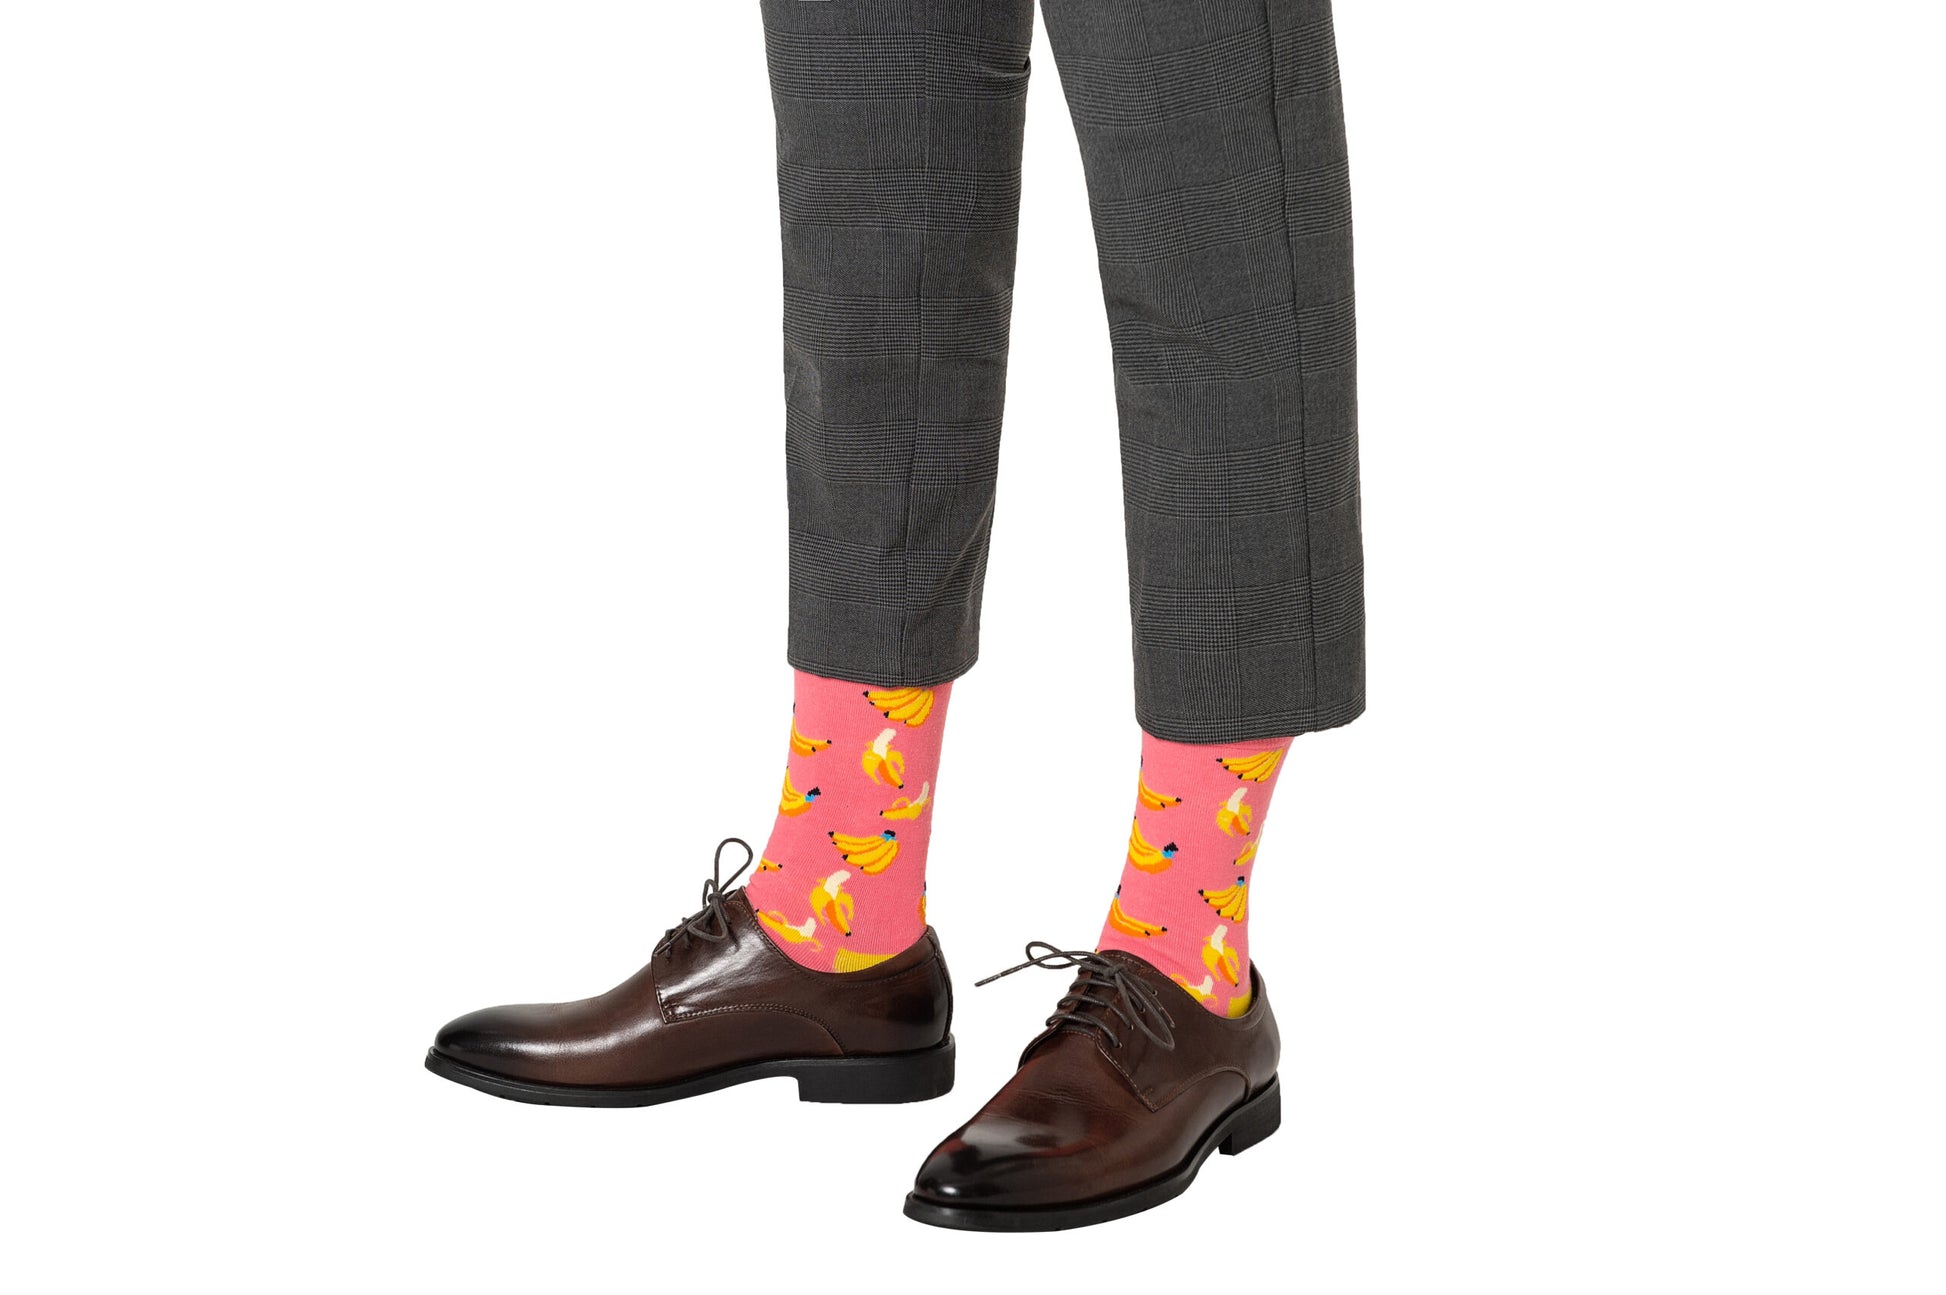 A man wearing a pair of Banana Pink Socks.